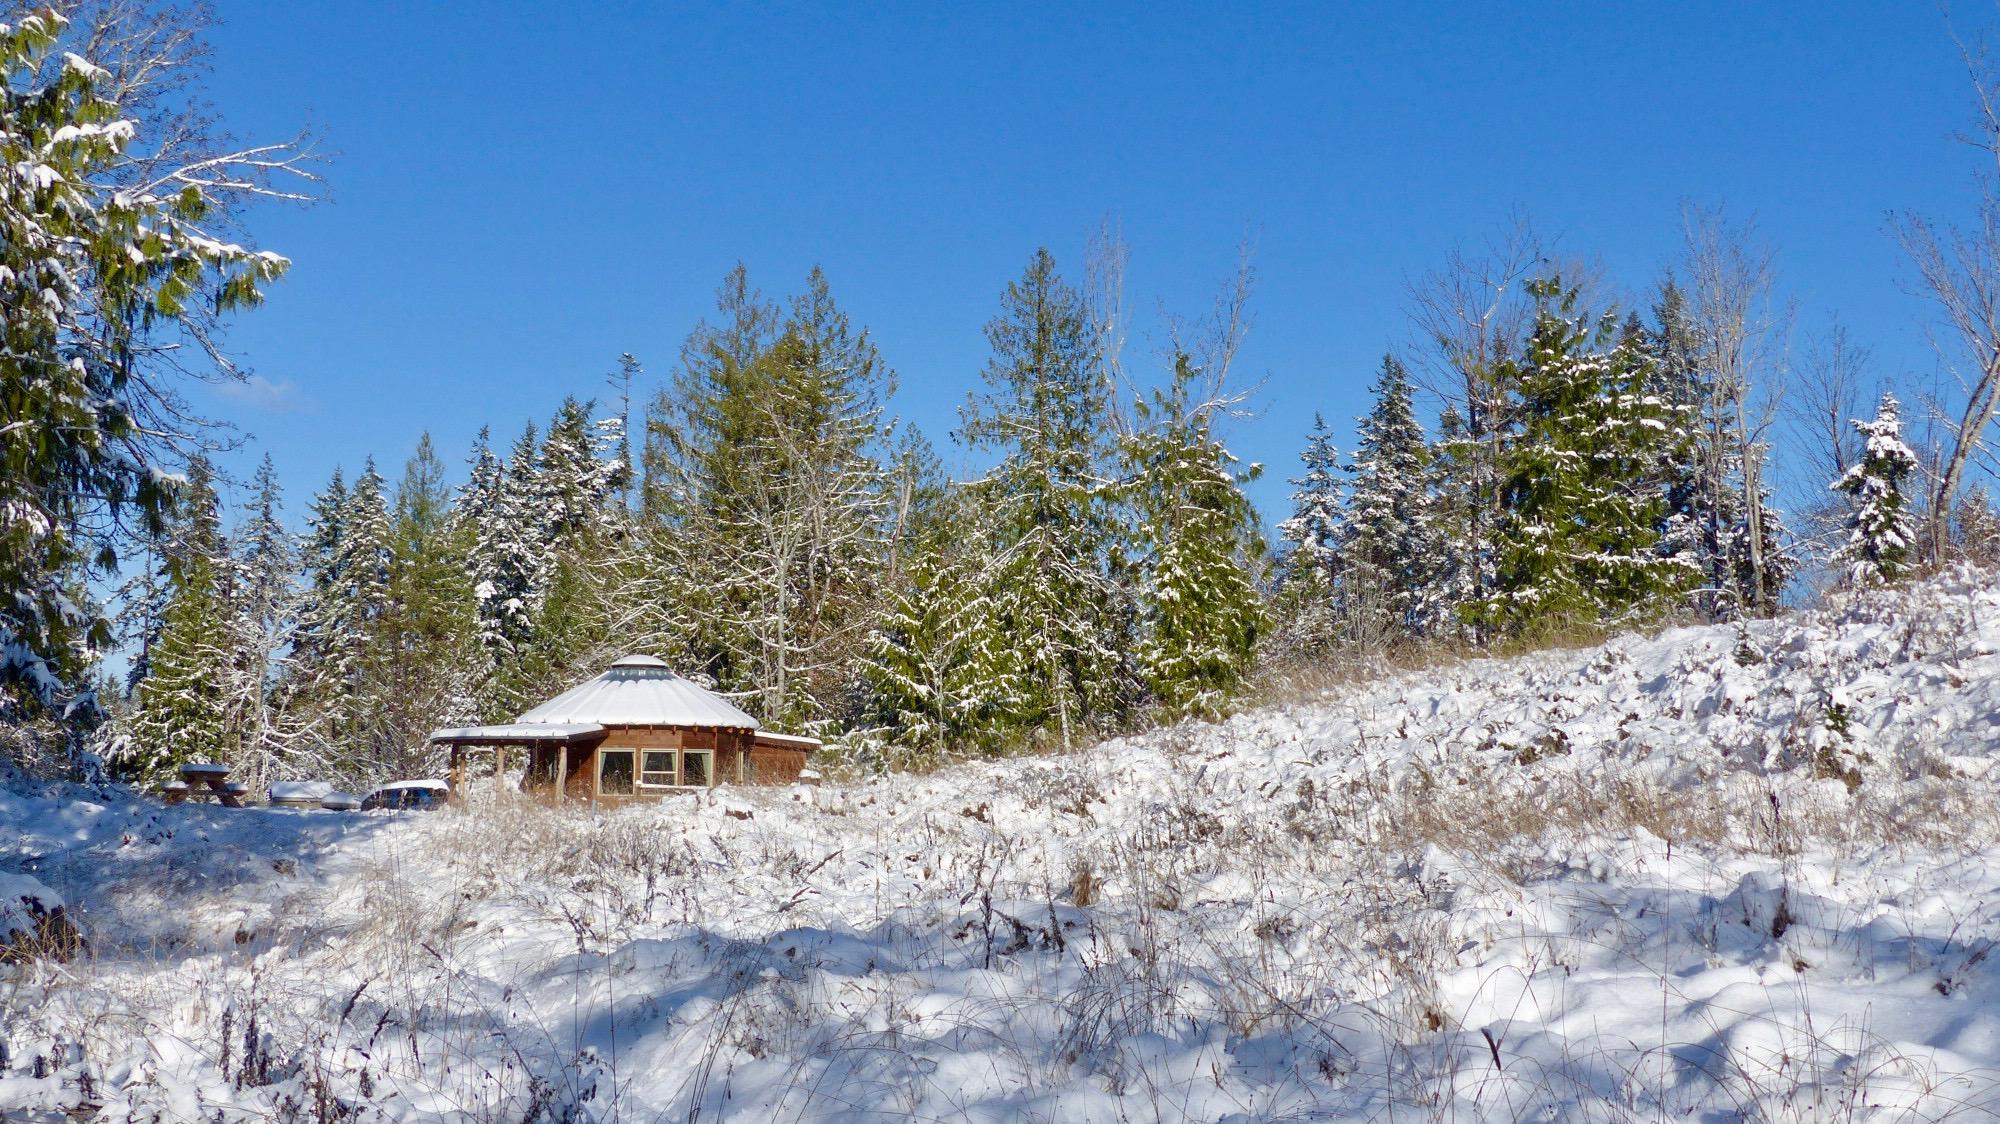 Smiling Woods wooden yurt in snow